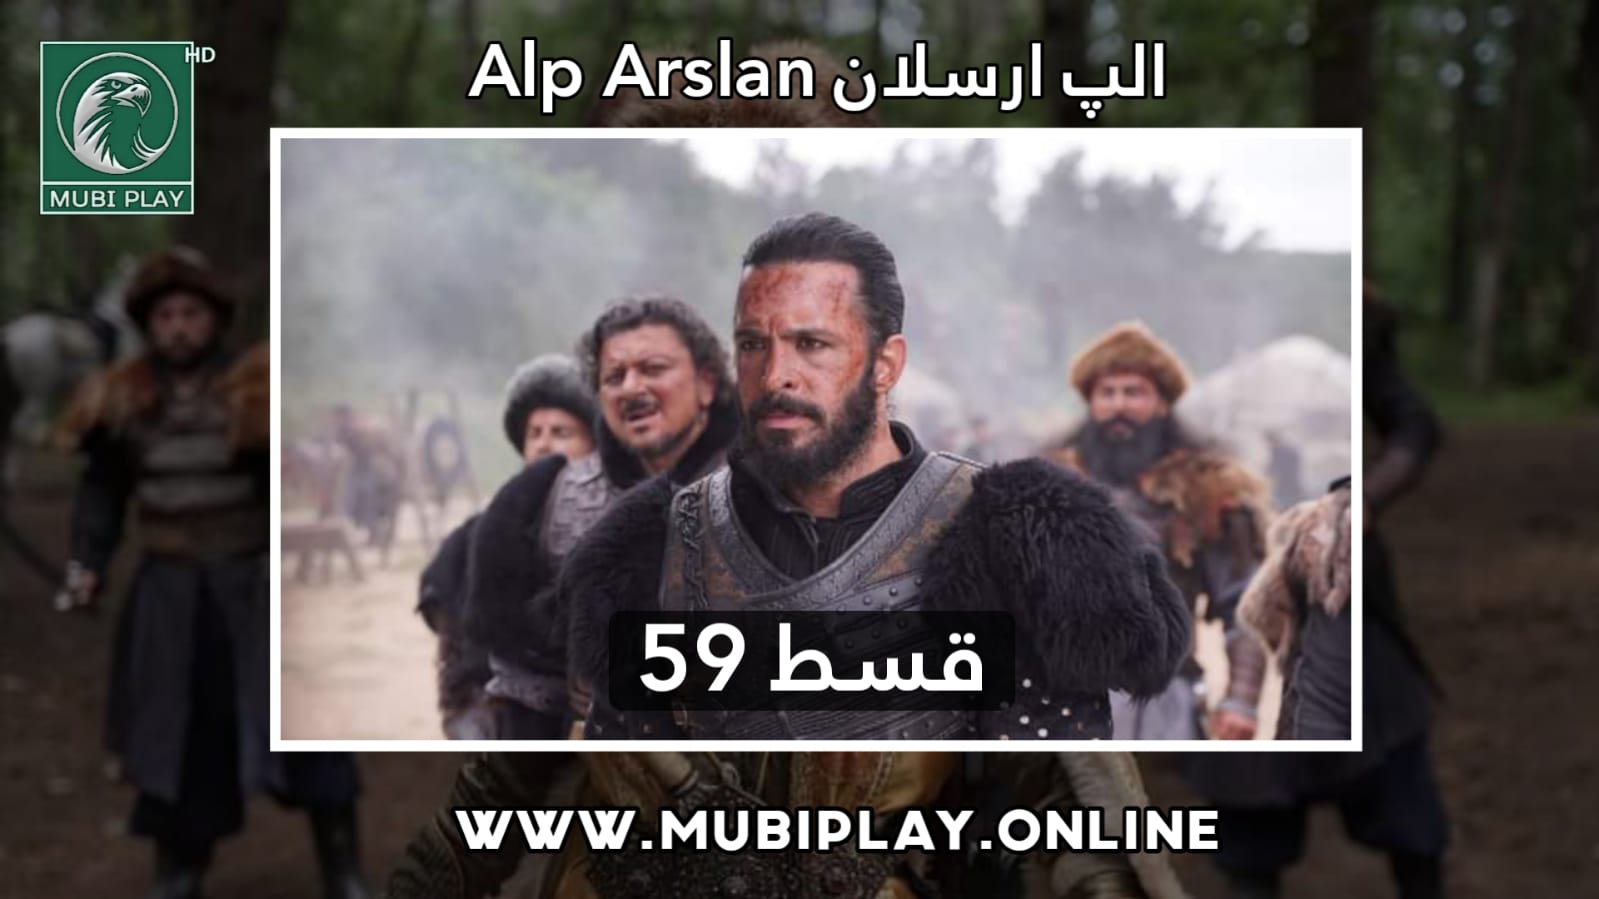 Alp Arslan Buyuk Selcuklu Episode 59 with Urdu & English Subtitles by MubiPlay